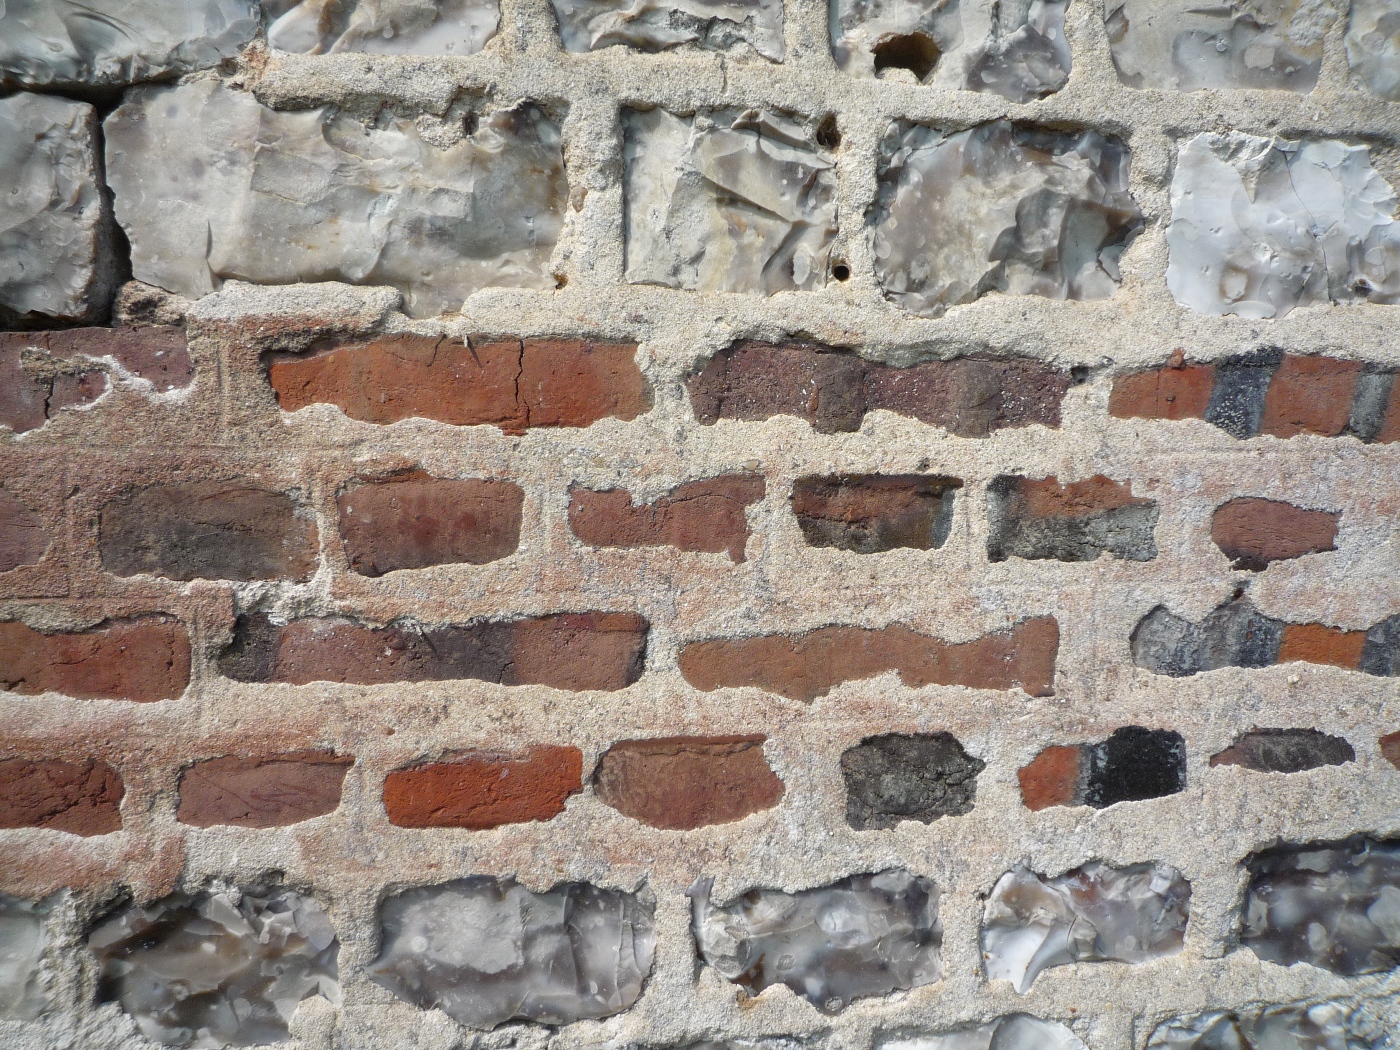 Assemblage de briques et cailloux dans un mur de maison à vendre proche des Petites Dalles